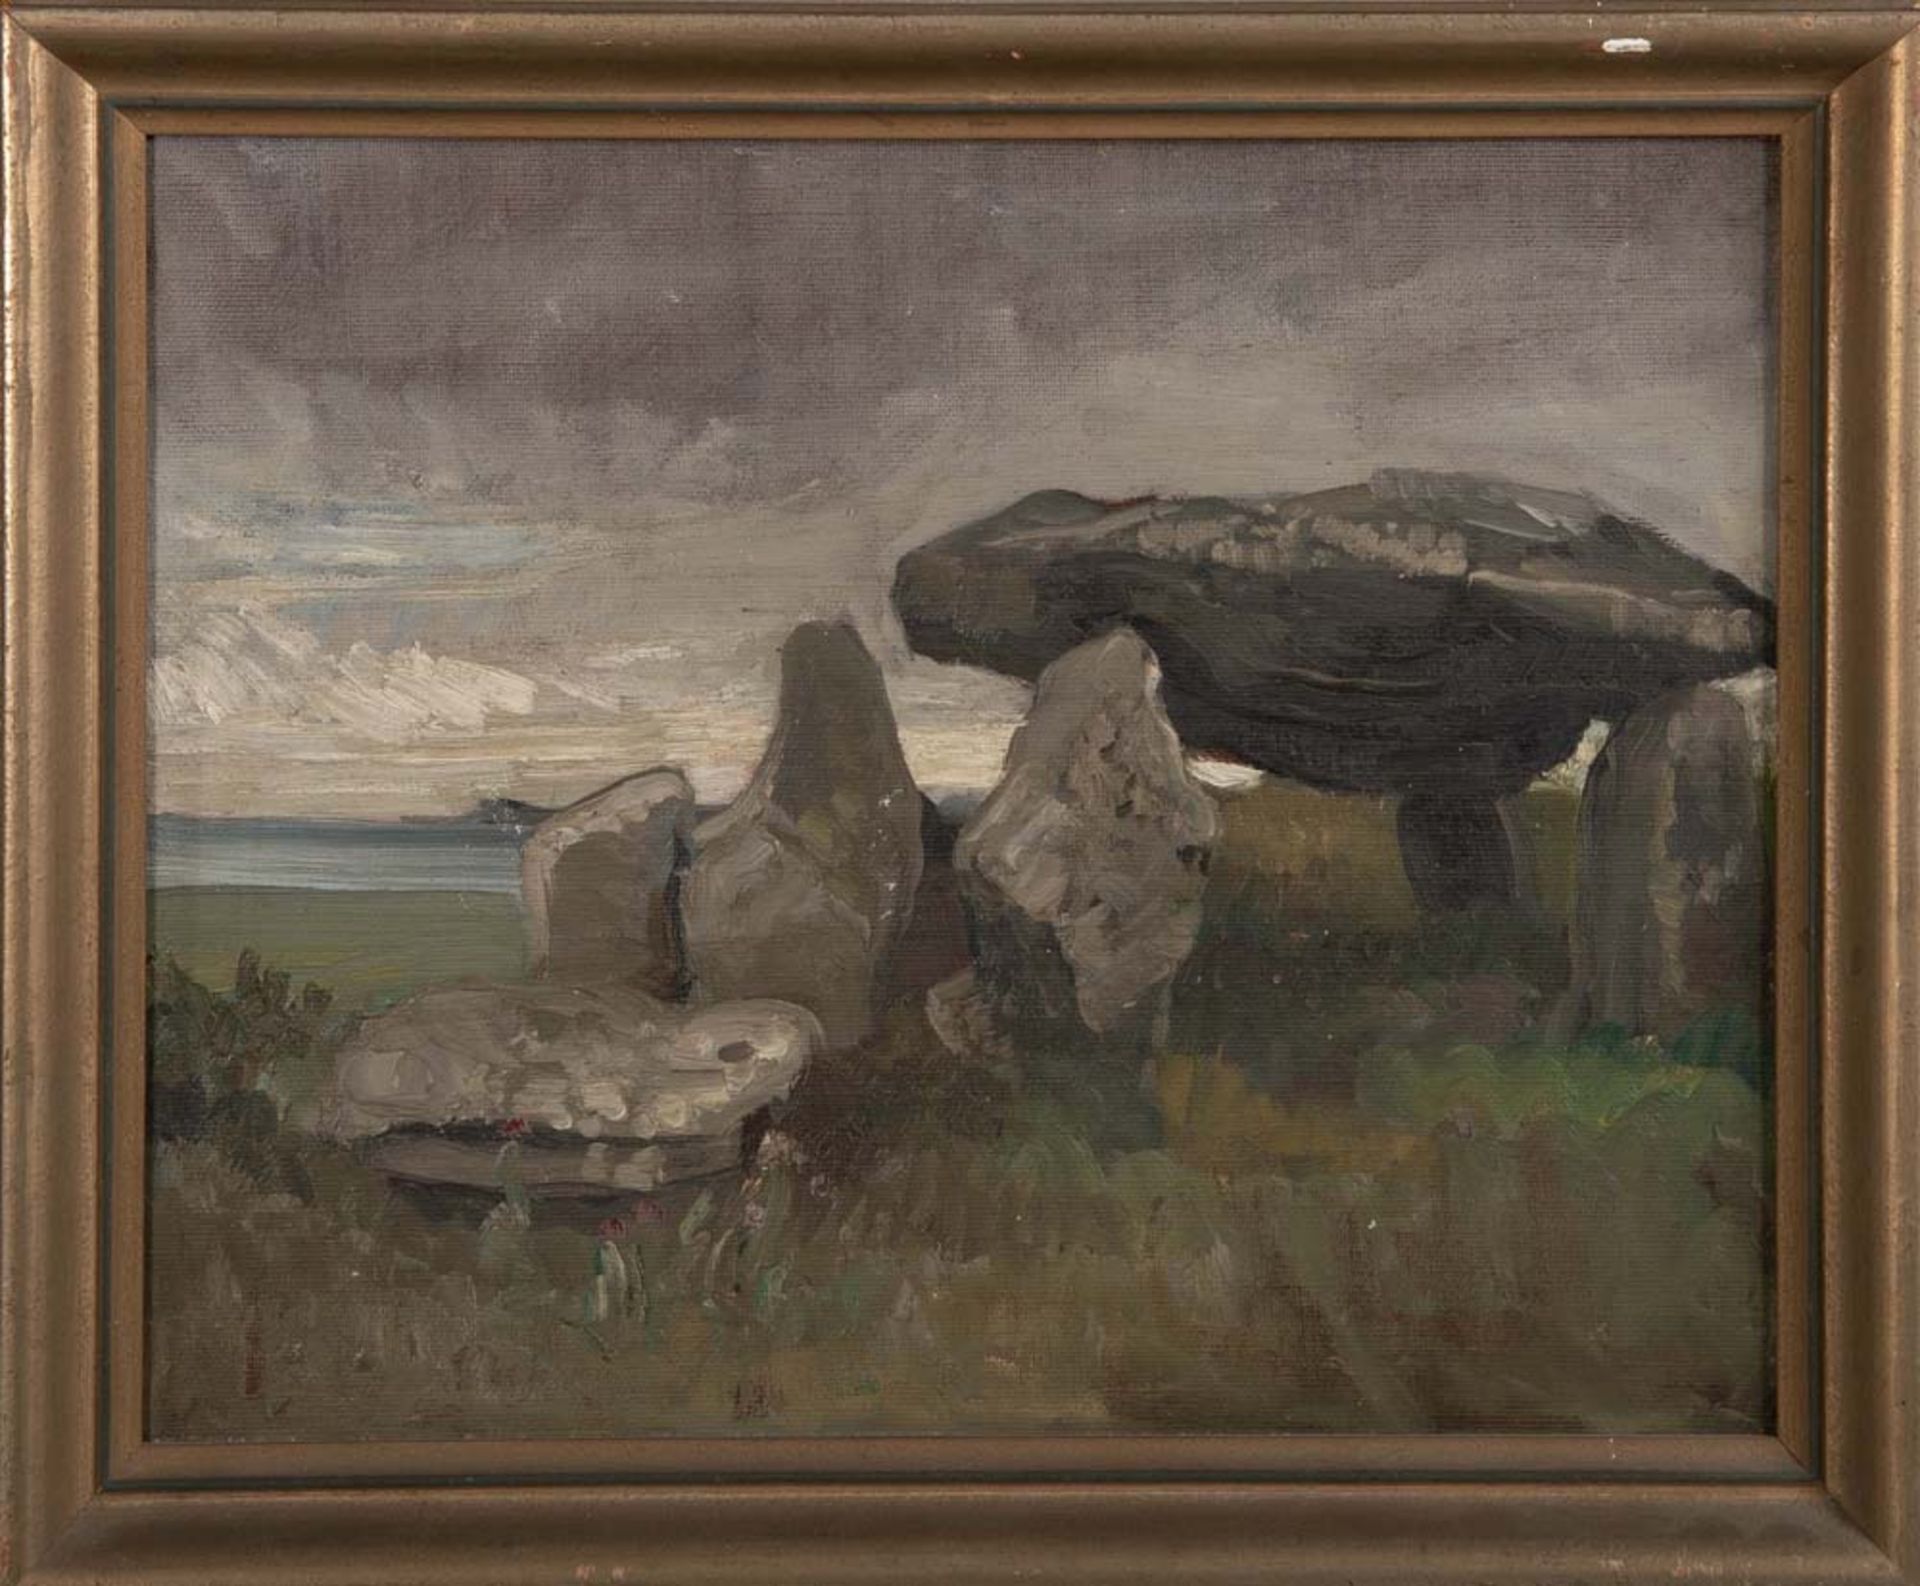 Emmy Lischke (1860-1919) attrib. Steinformation, im Hintergrund ein See. Öl/Malkarton, gerahmt, 36 x